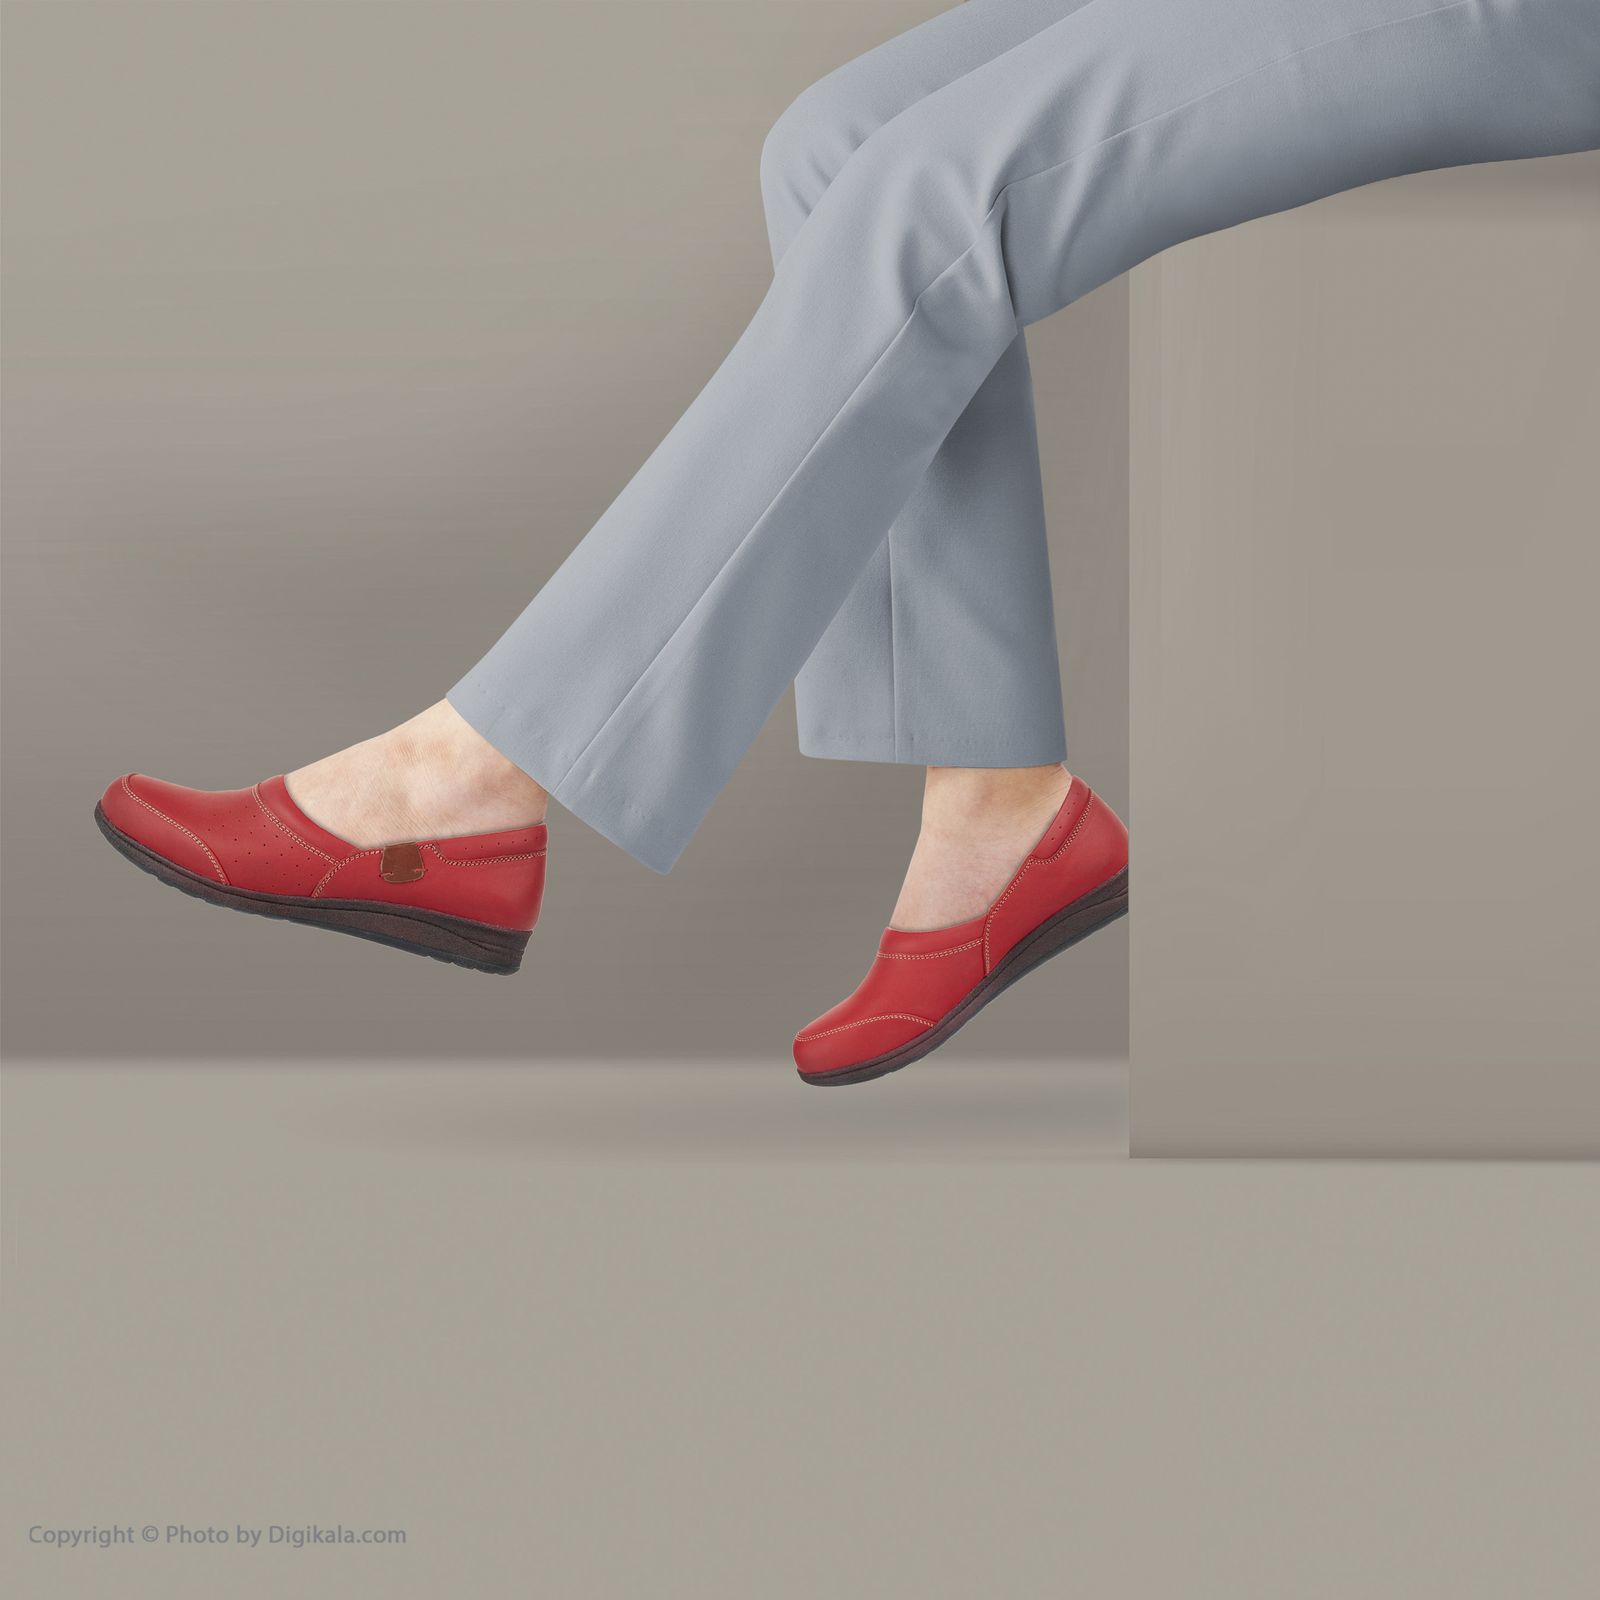 کفش روزمره زنانه ریمکس مدل 5181B500-102 - قرمز - 2